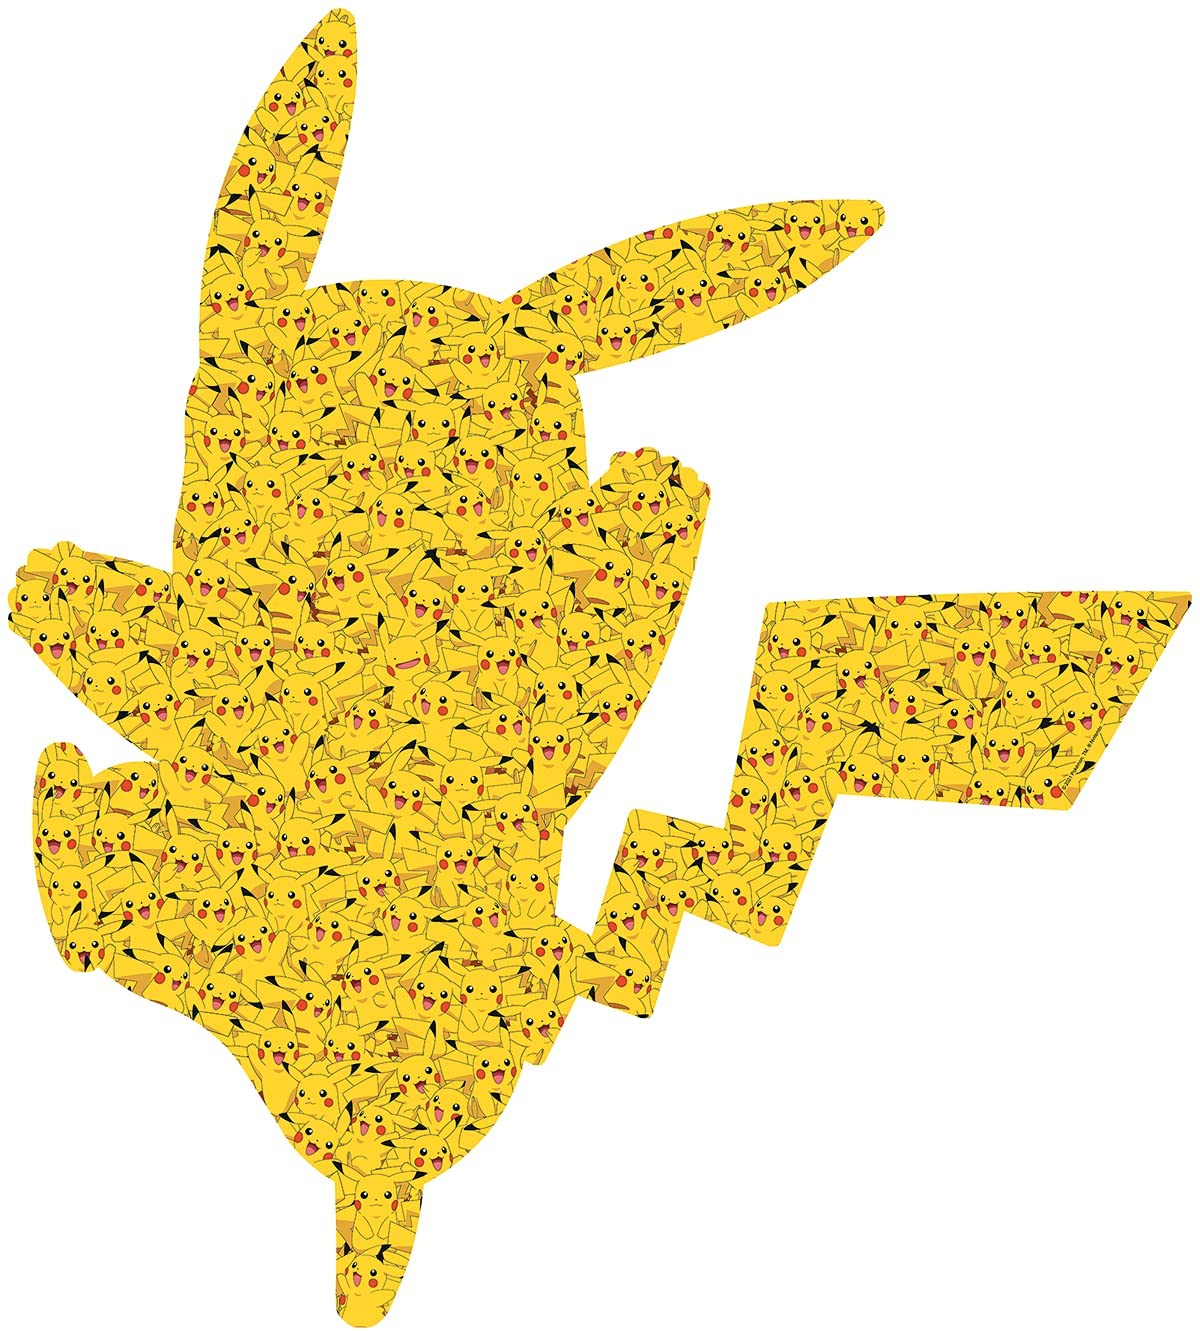 Ravensburger Pikachu Challenge 1000 Piece Puzzle – The Puzzle